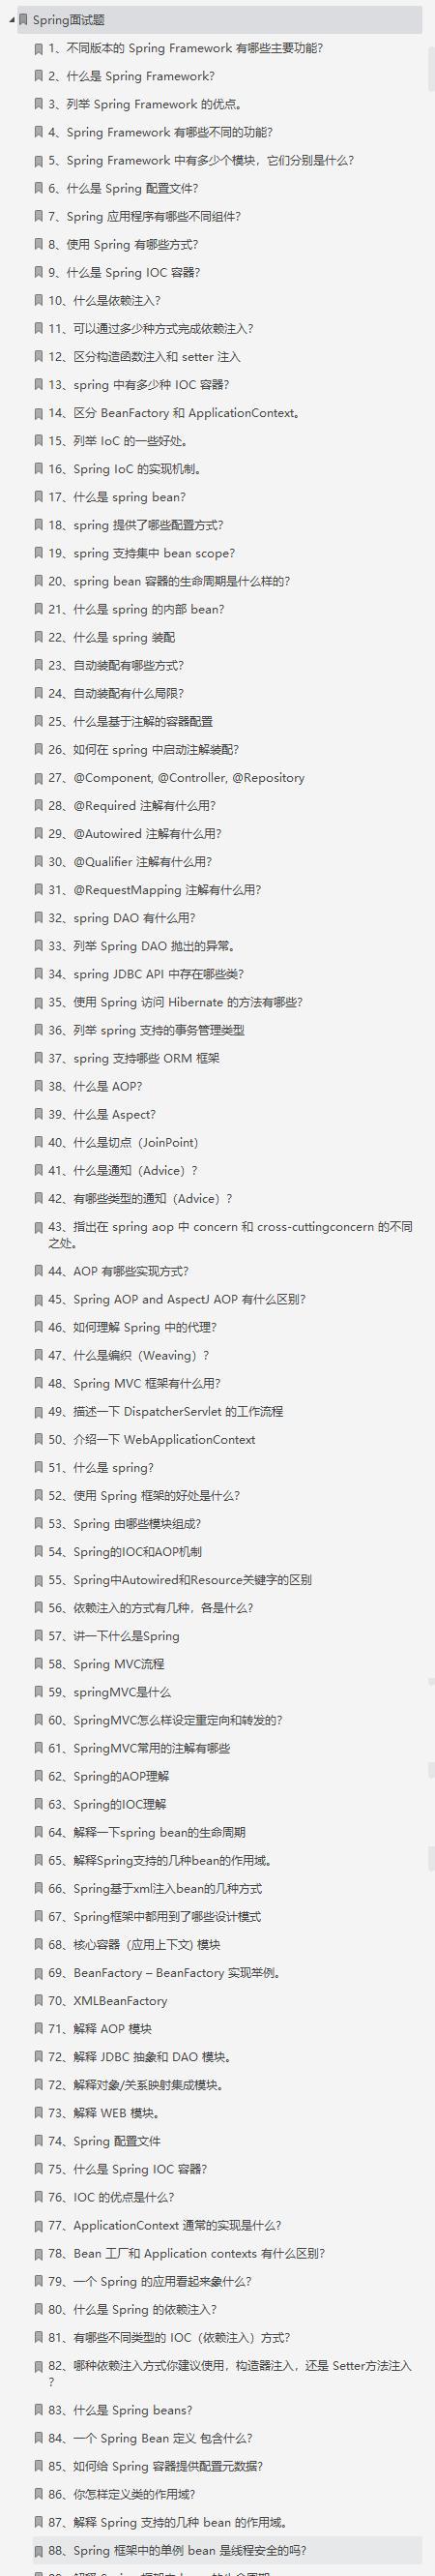 Las preguntas de Ali, Byte, Tencent y de la entrevista están todas cubiertas, y este documento de entrevista de Java es demasiado fuerte